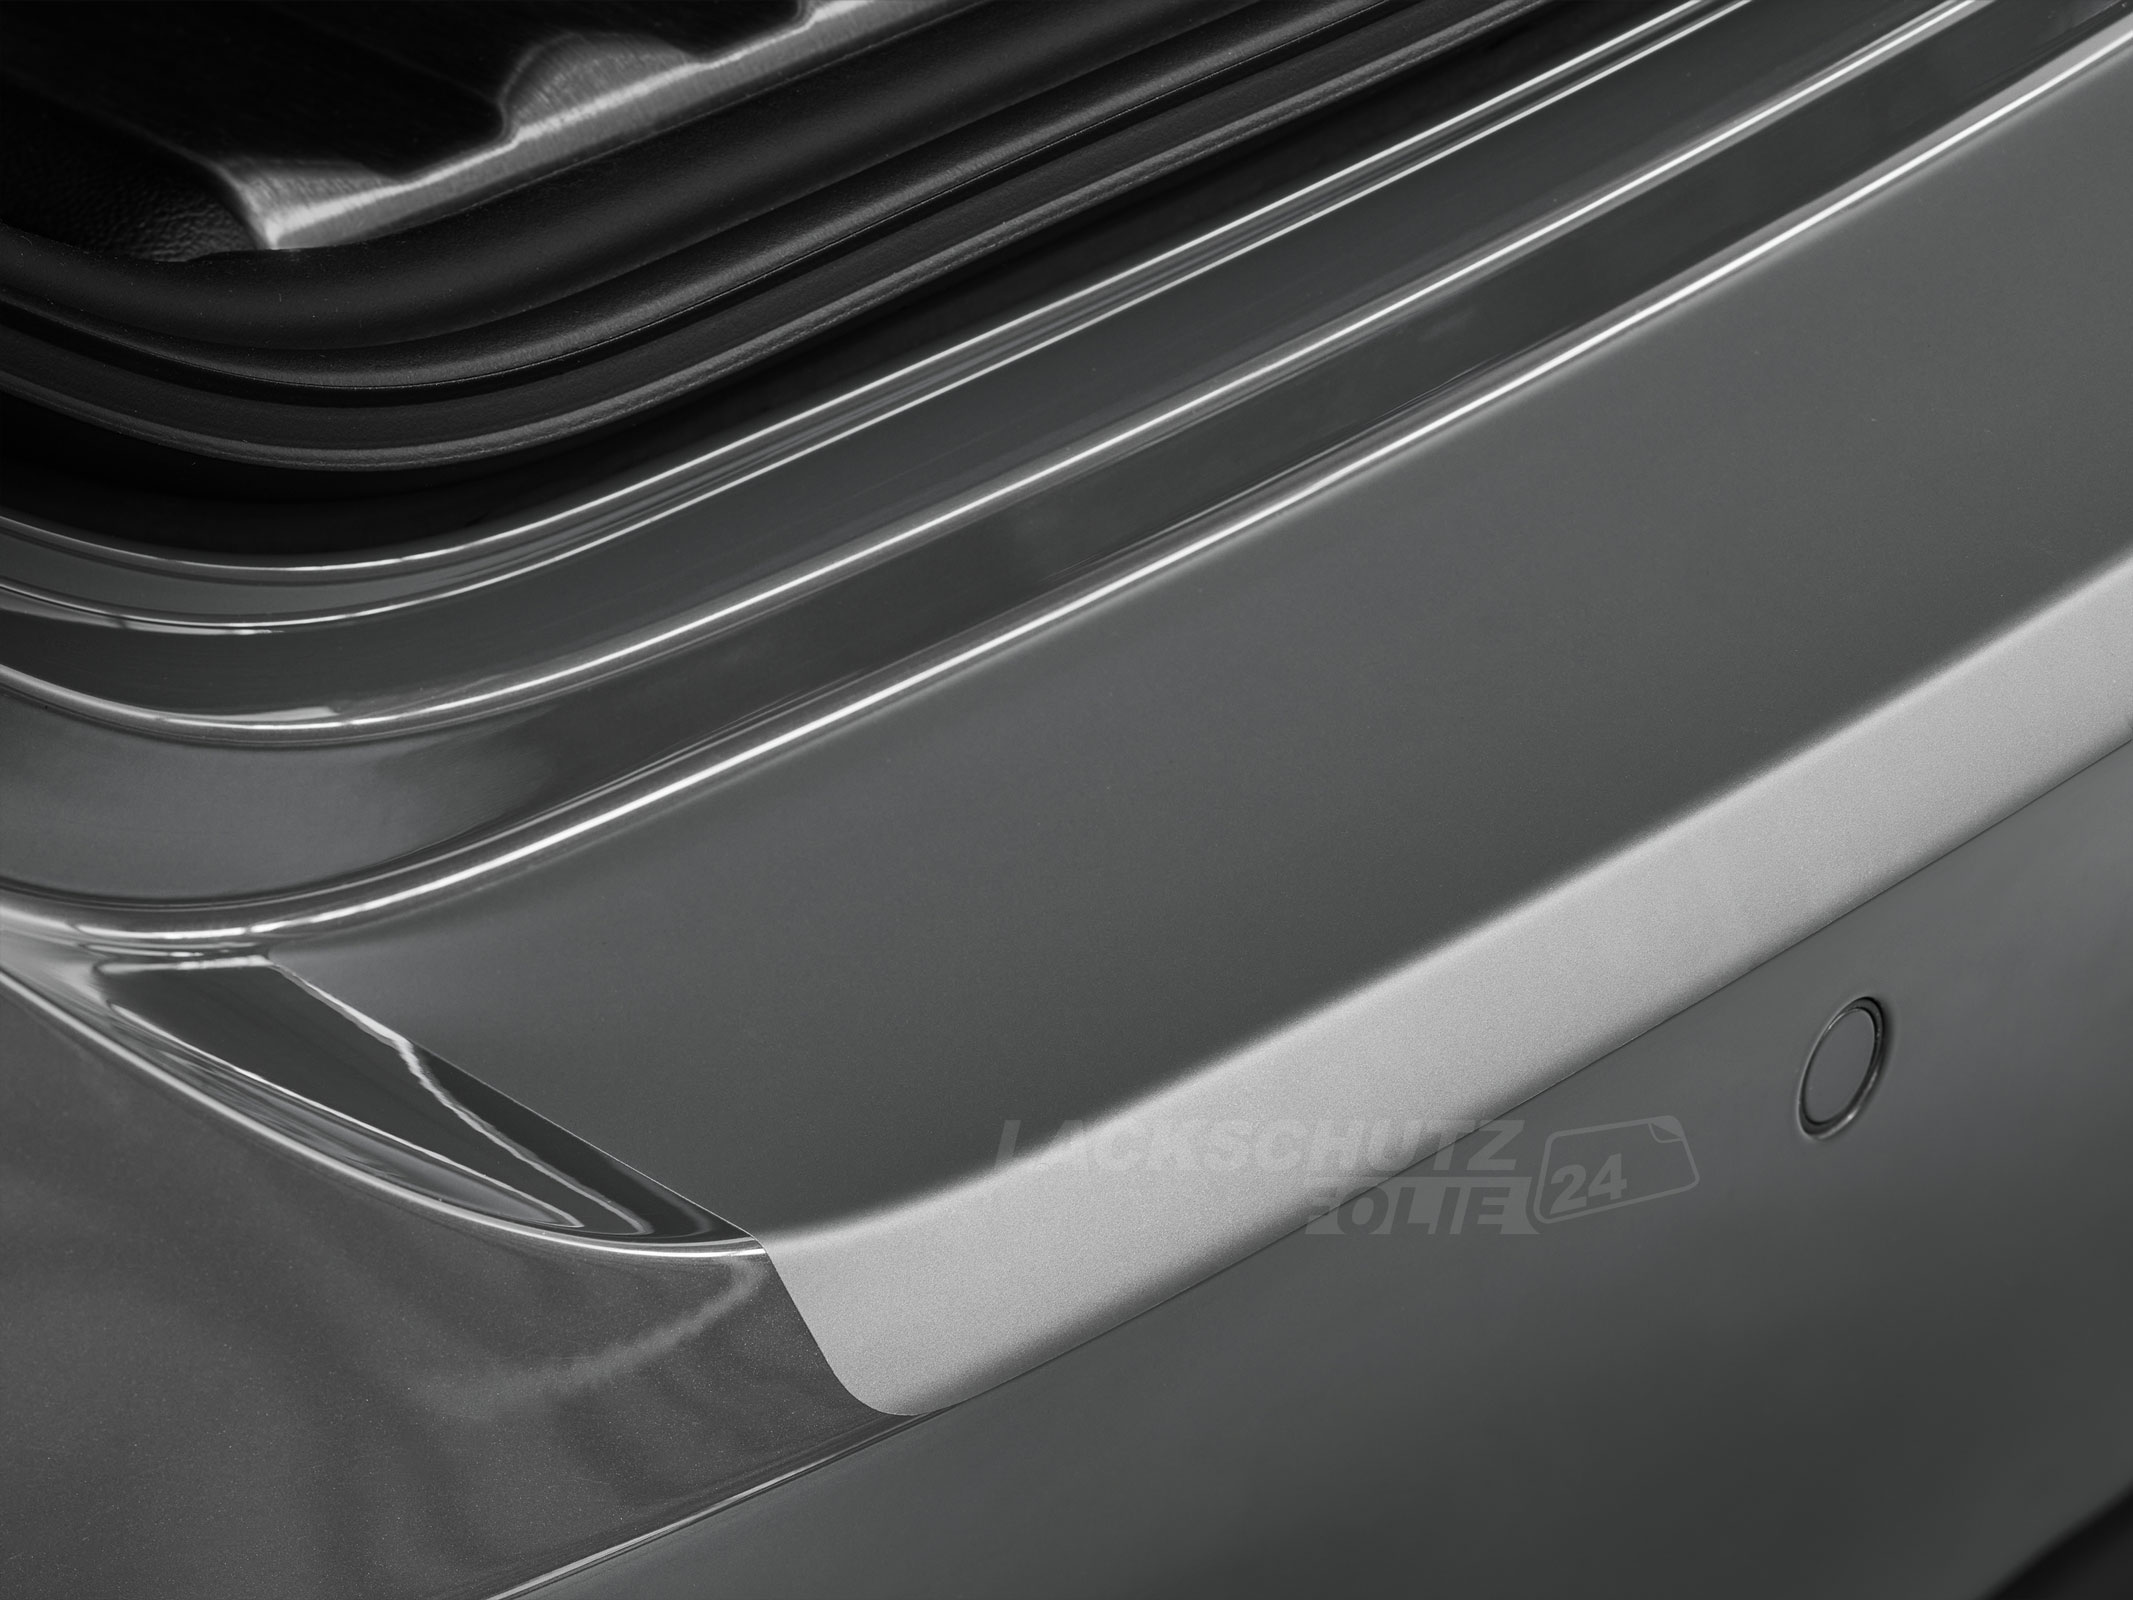 Ladekantenschutzfolie - Transparent Glatt MATT 110 µm stark  für Opel Meriva  Typ A, BJ 2003-2010